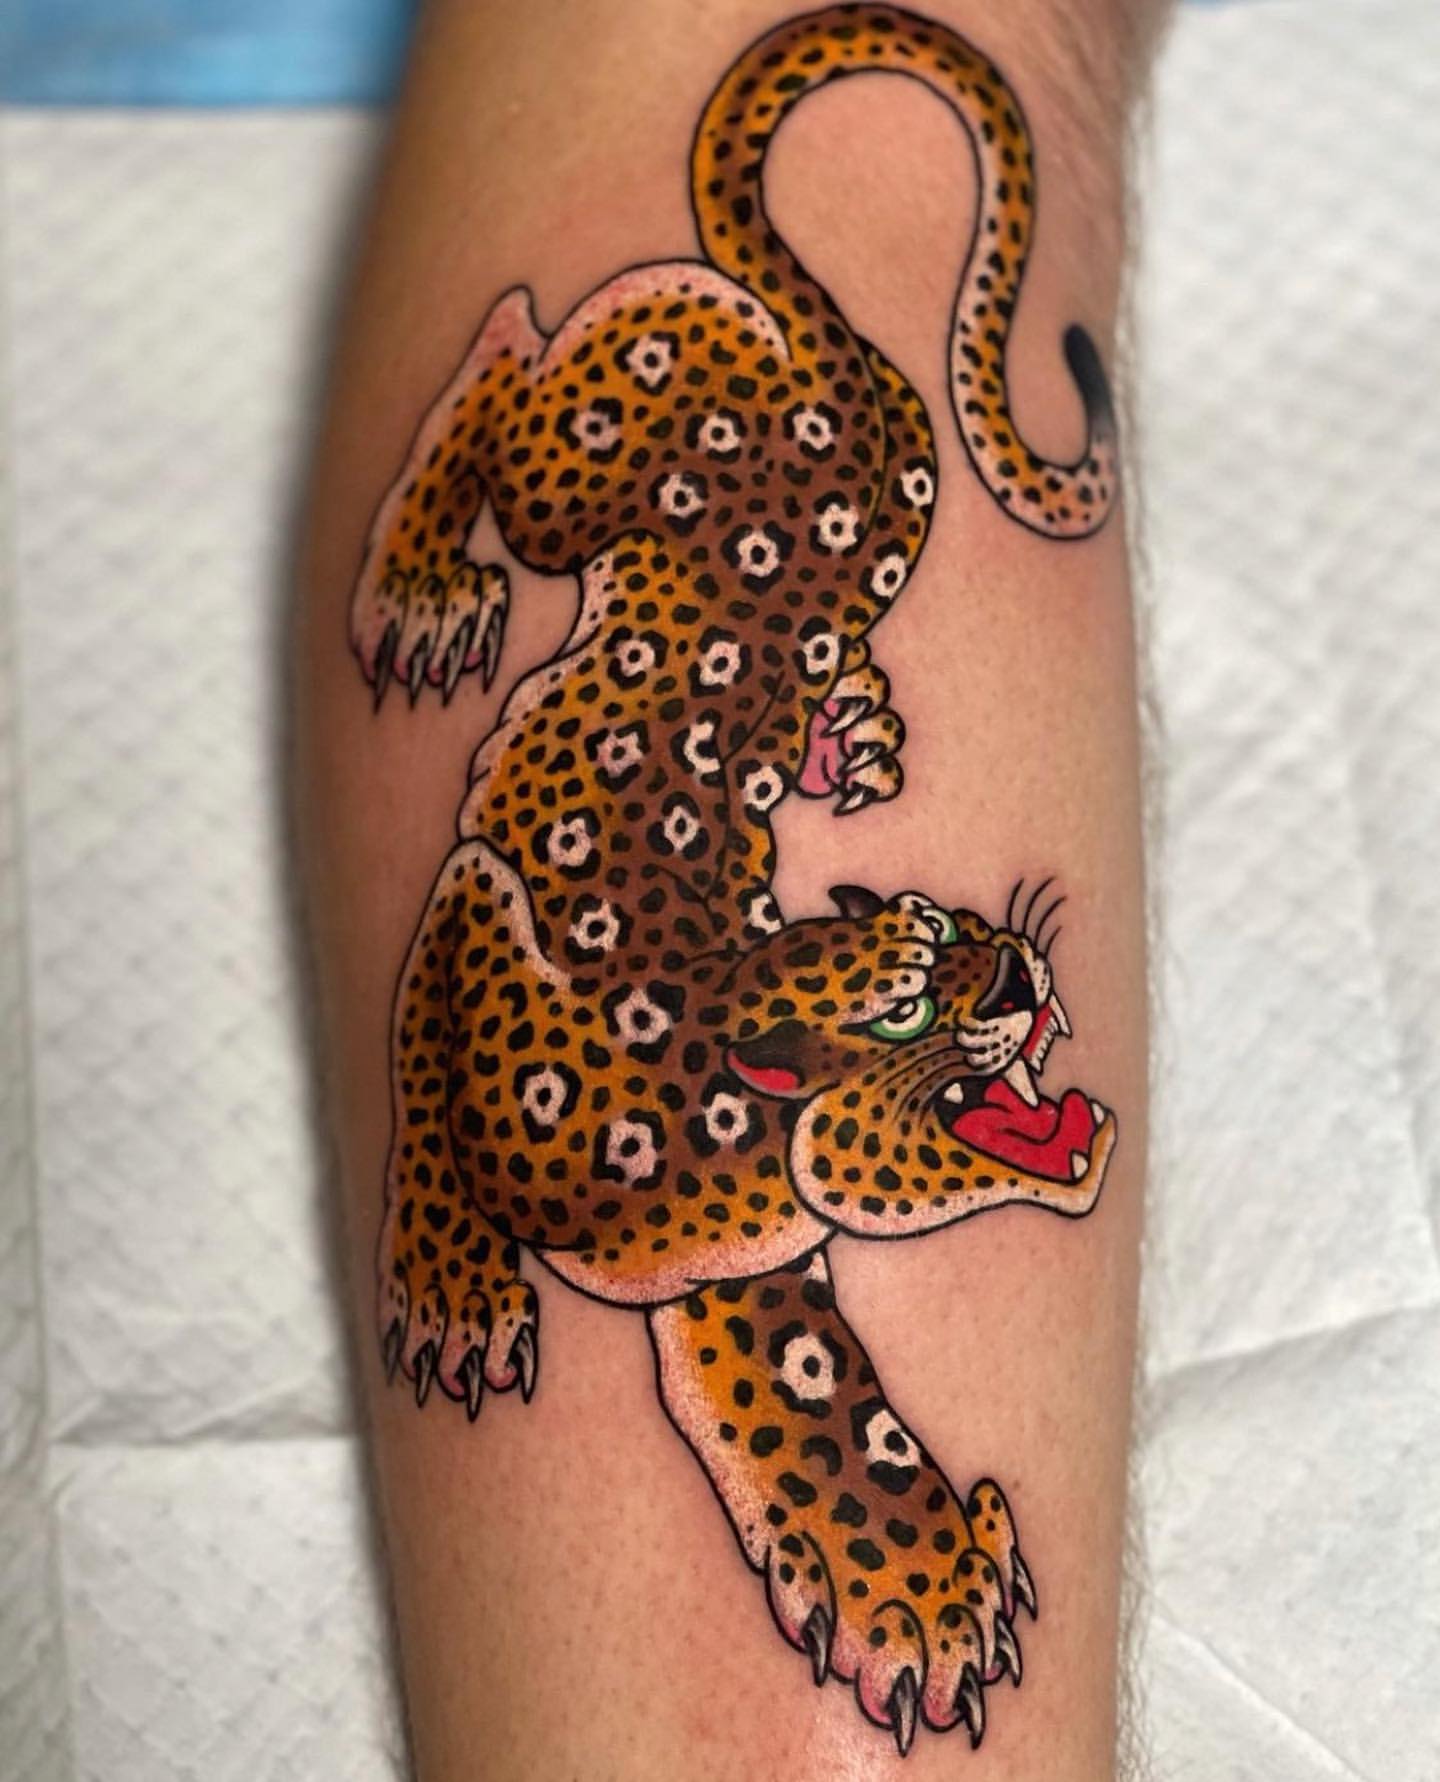 Leopard and Jaguar Tattoo Ideas 14